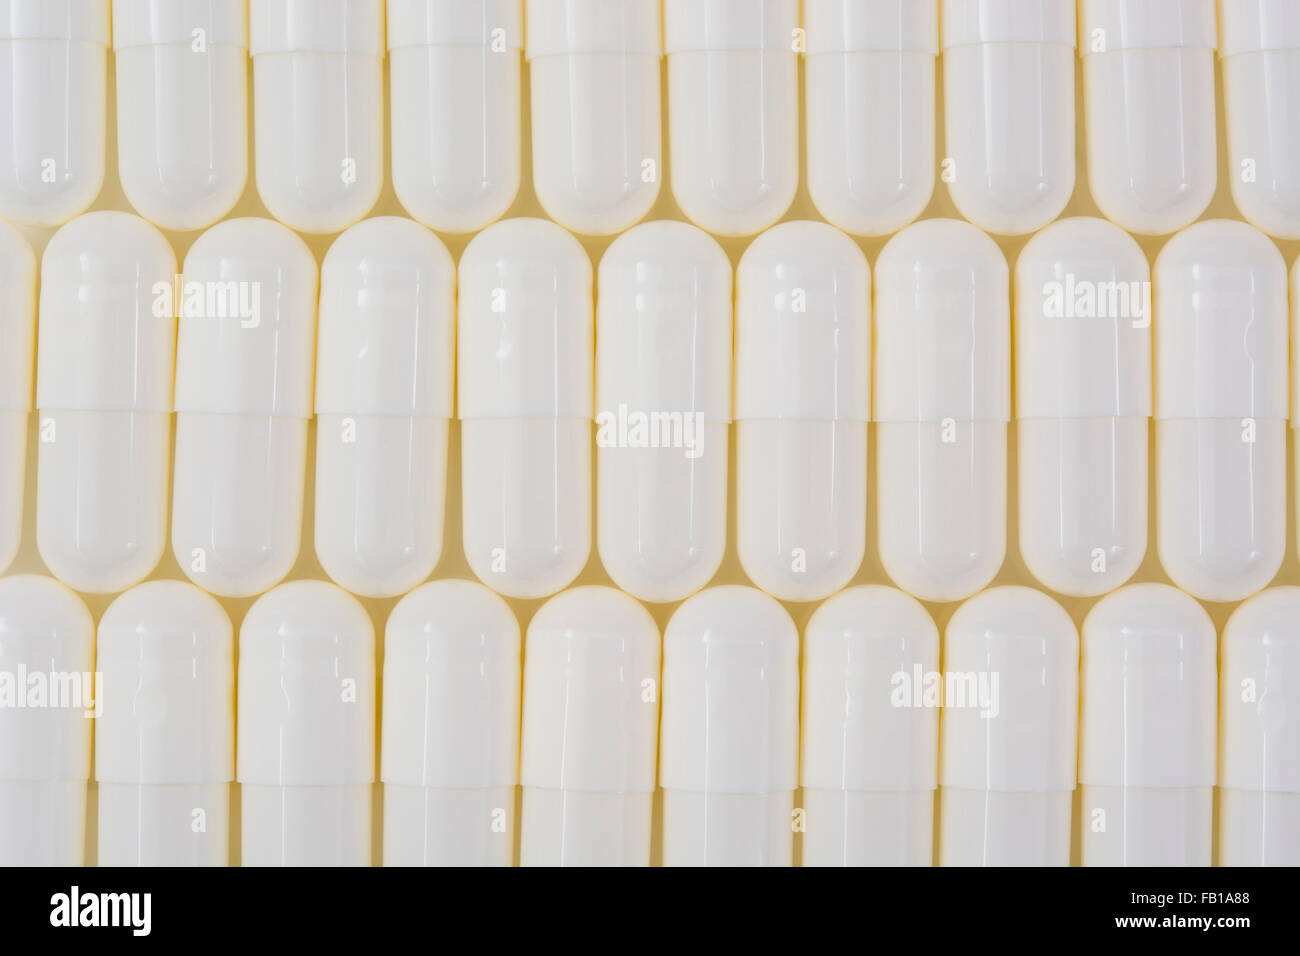 Primer plano de pastillas blancas - forma de cápsula hecha de gelatina. Pastillas blancas. Big Pharma metáfora, concepto de ensayos de drogas. Foto de stock